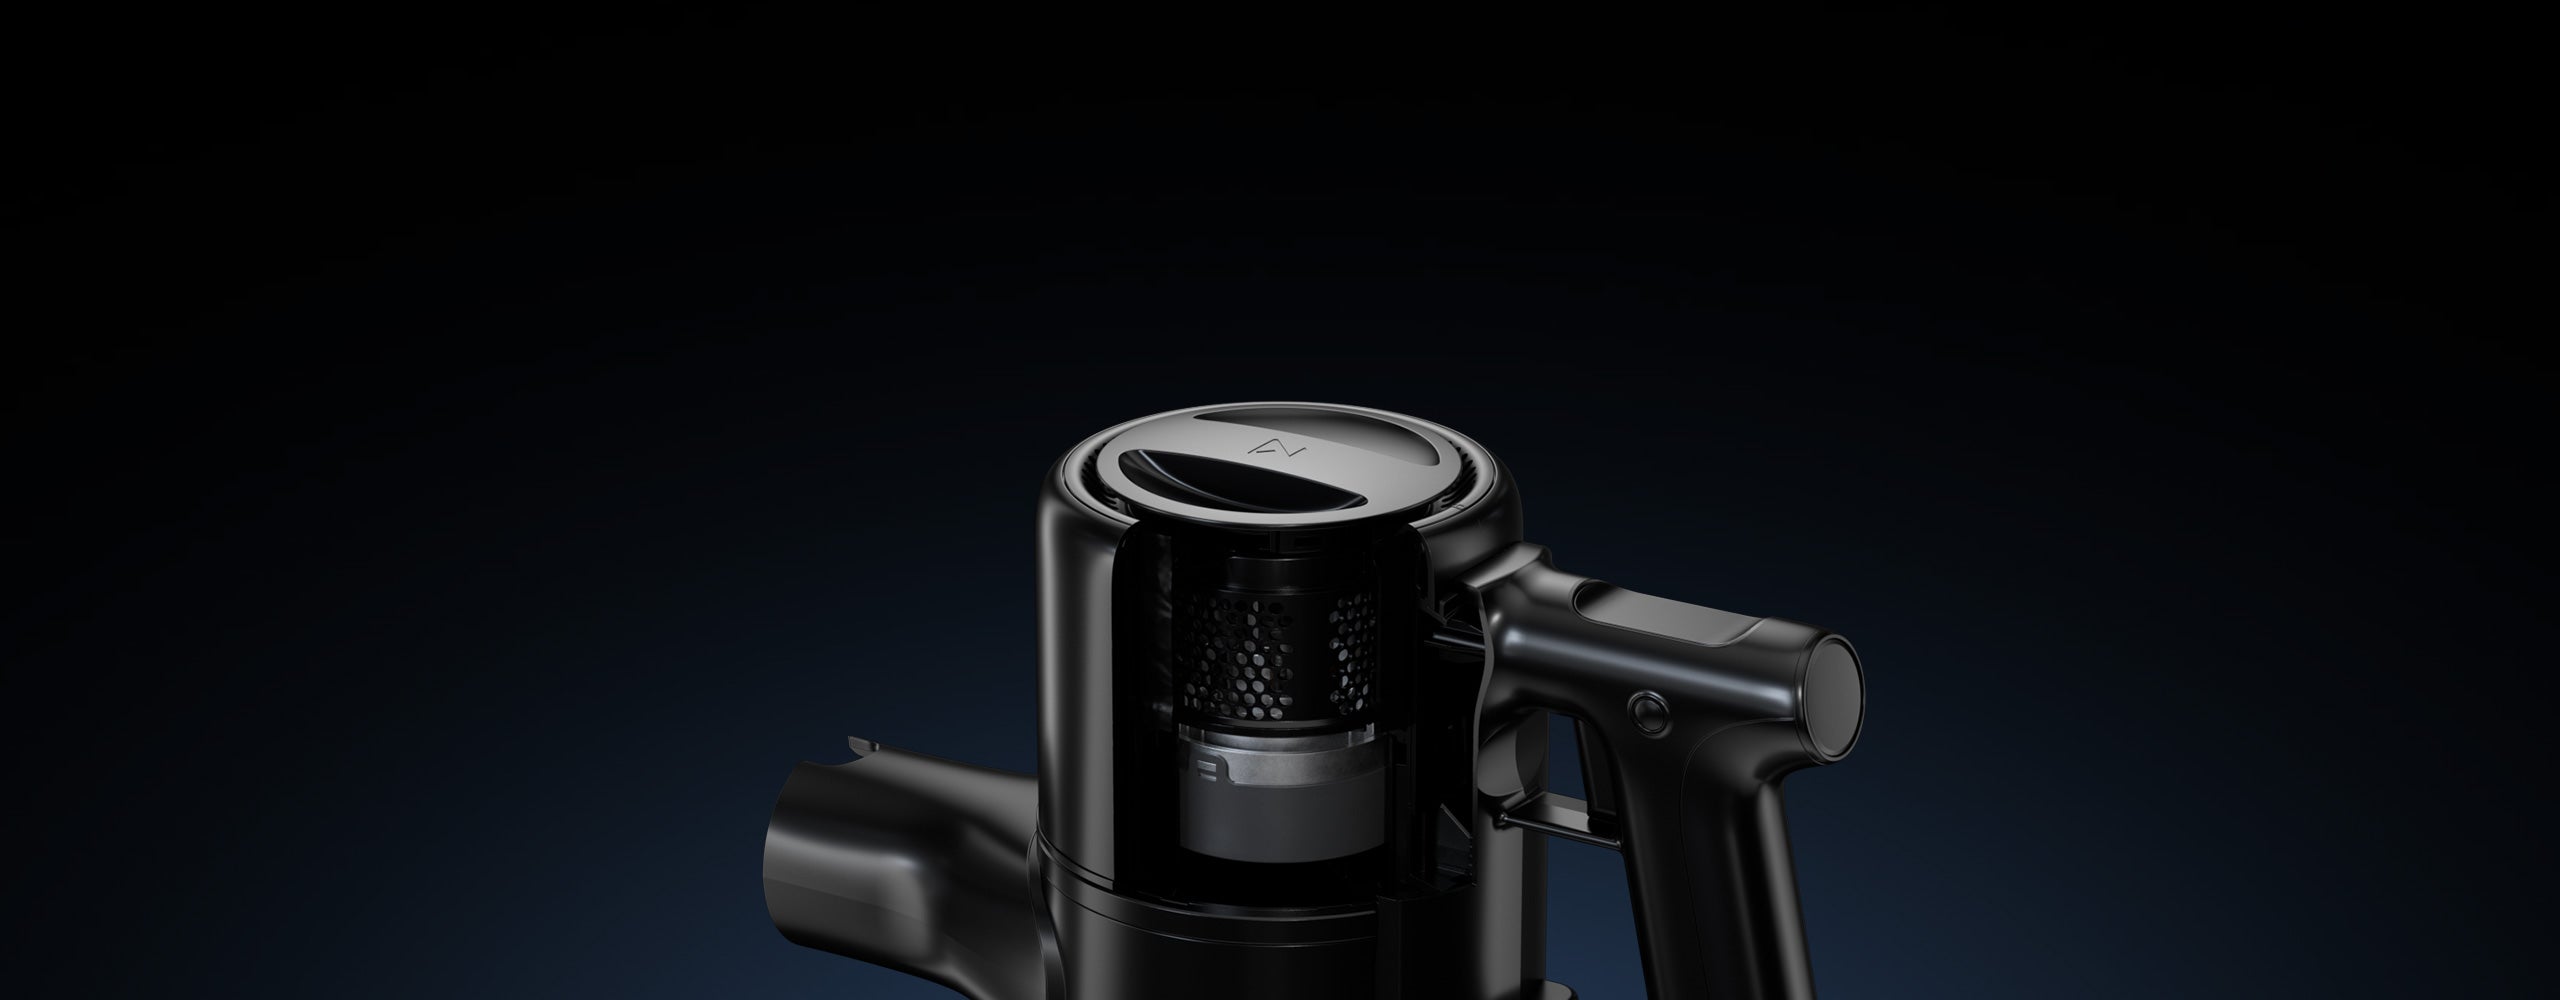 Roborock H6 minimiza el ruido gracias a su cámara amortiguadora, el control avanzado del flujo de aire y el filtro trasero